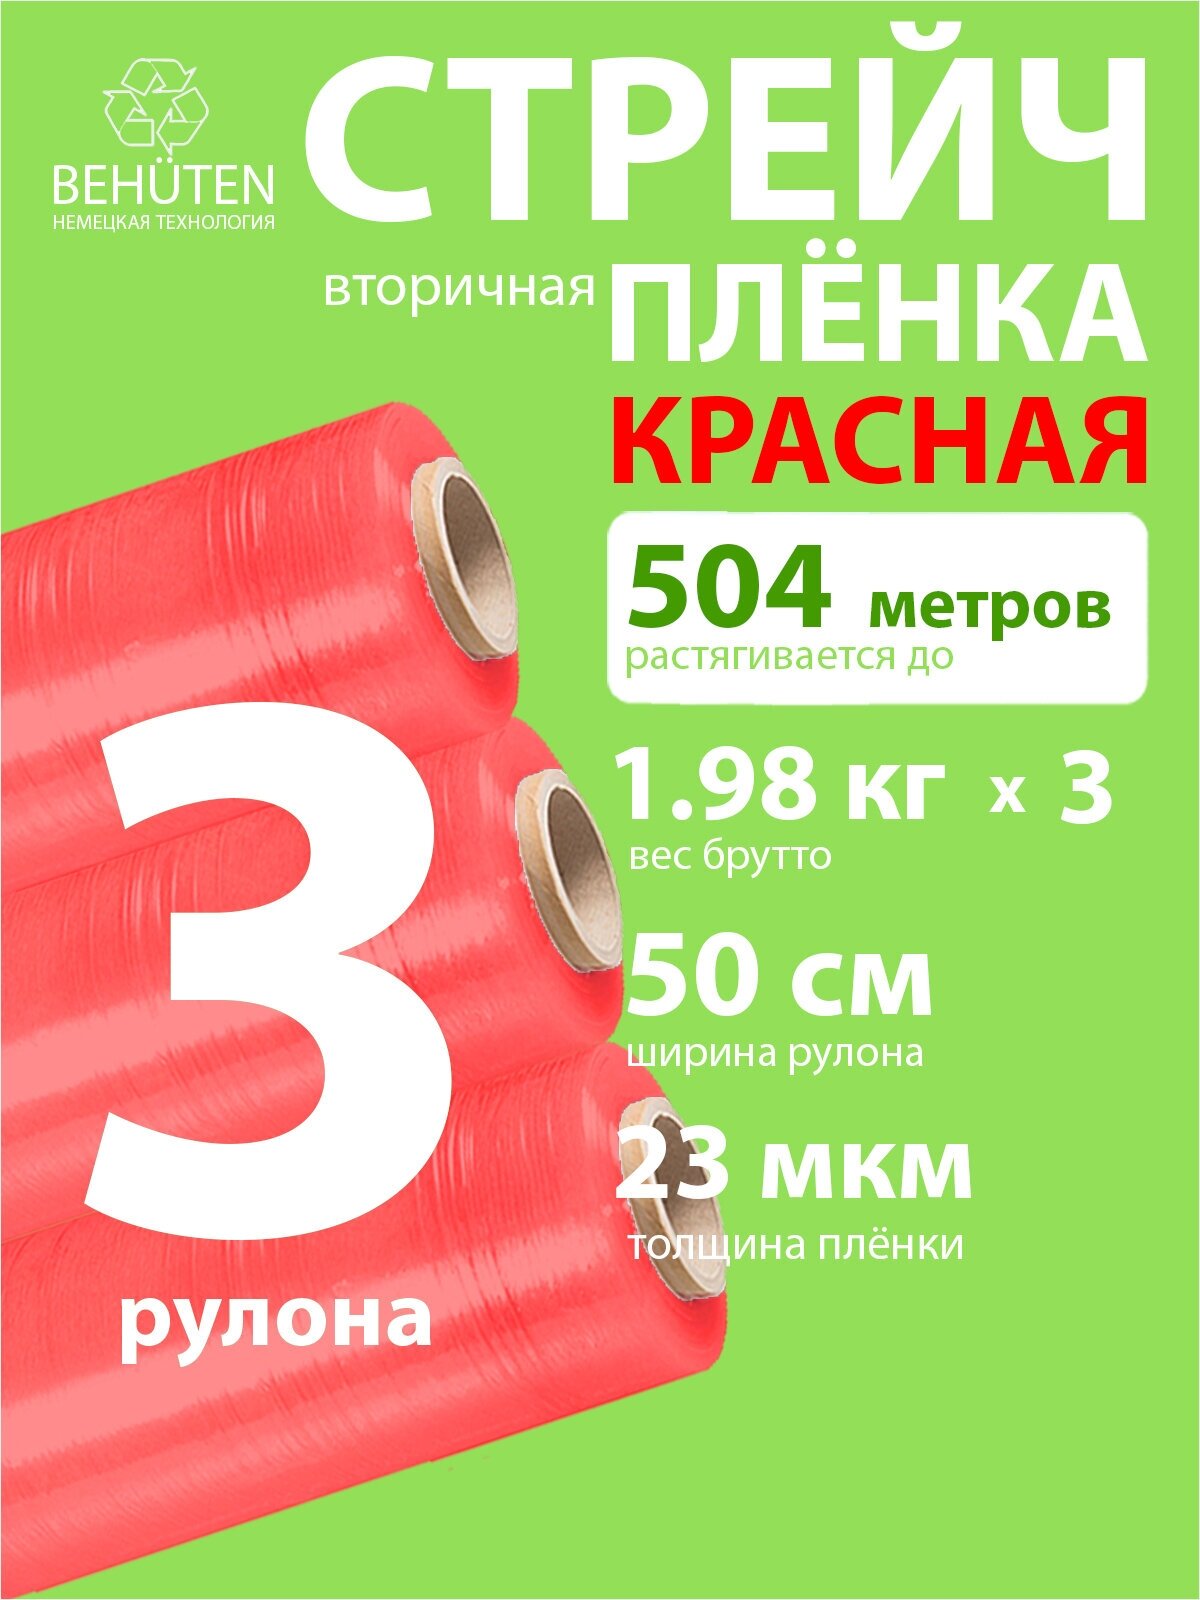 Стрейч пленка BEHUTEN упаковочная красная 50 см 23 мкм 1,98 кг вторичная, 3 рулона